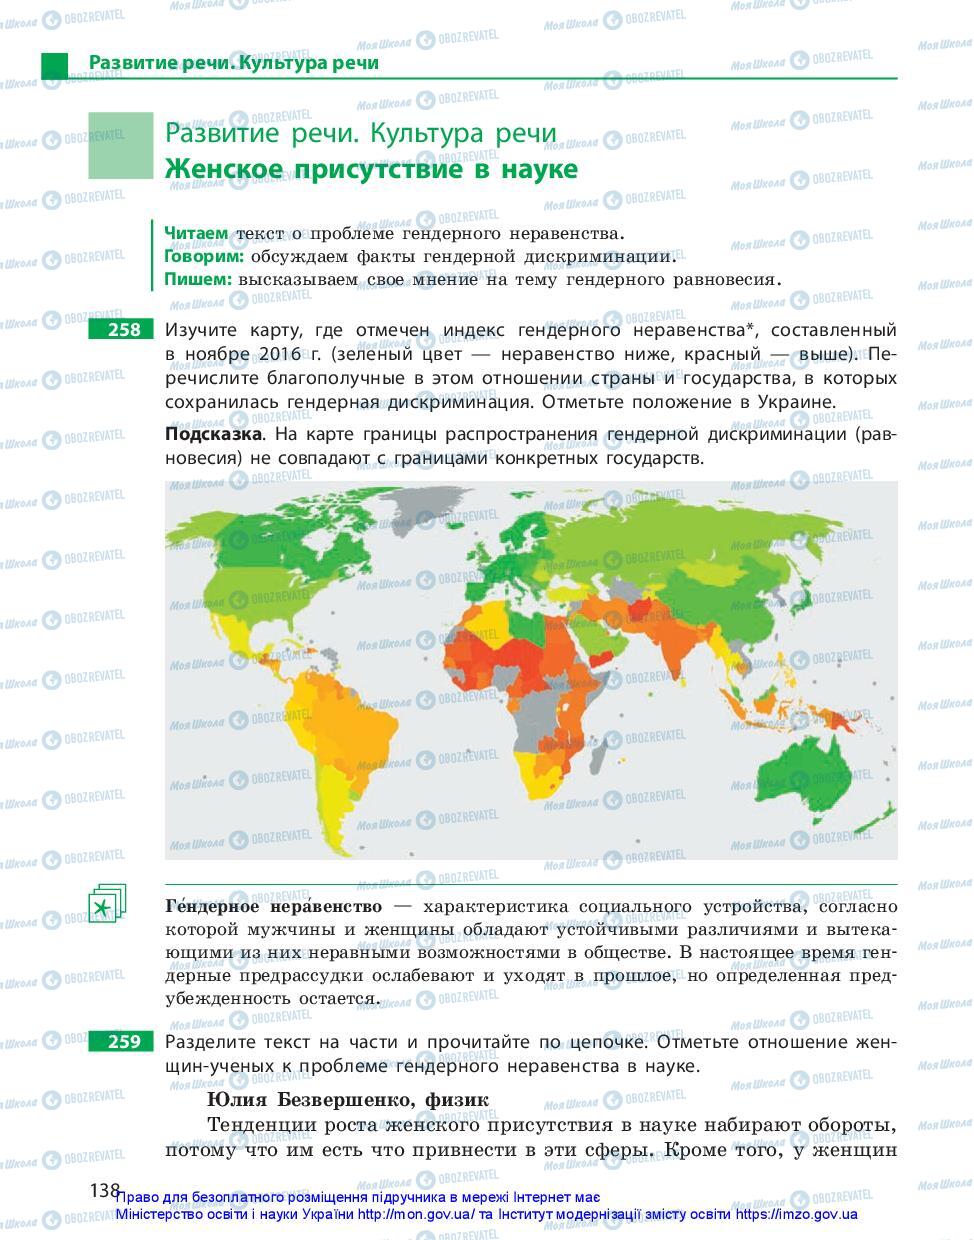 Учебники Русский язык 11 класс страница 138